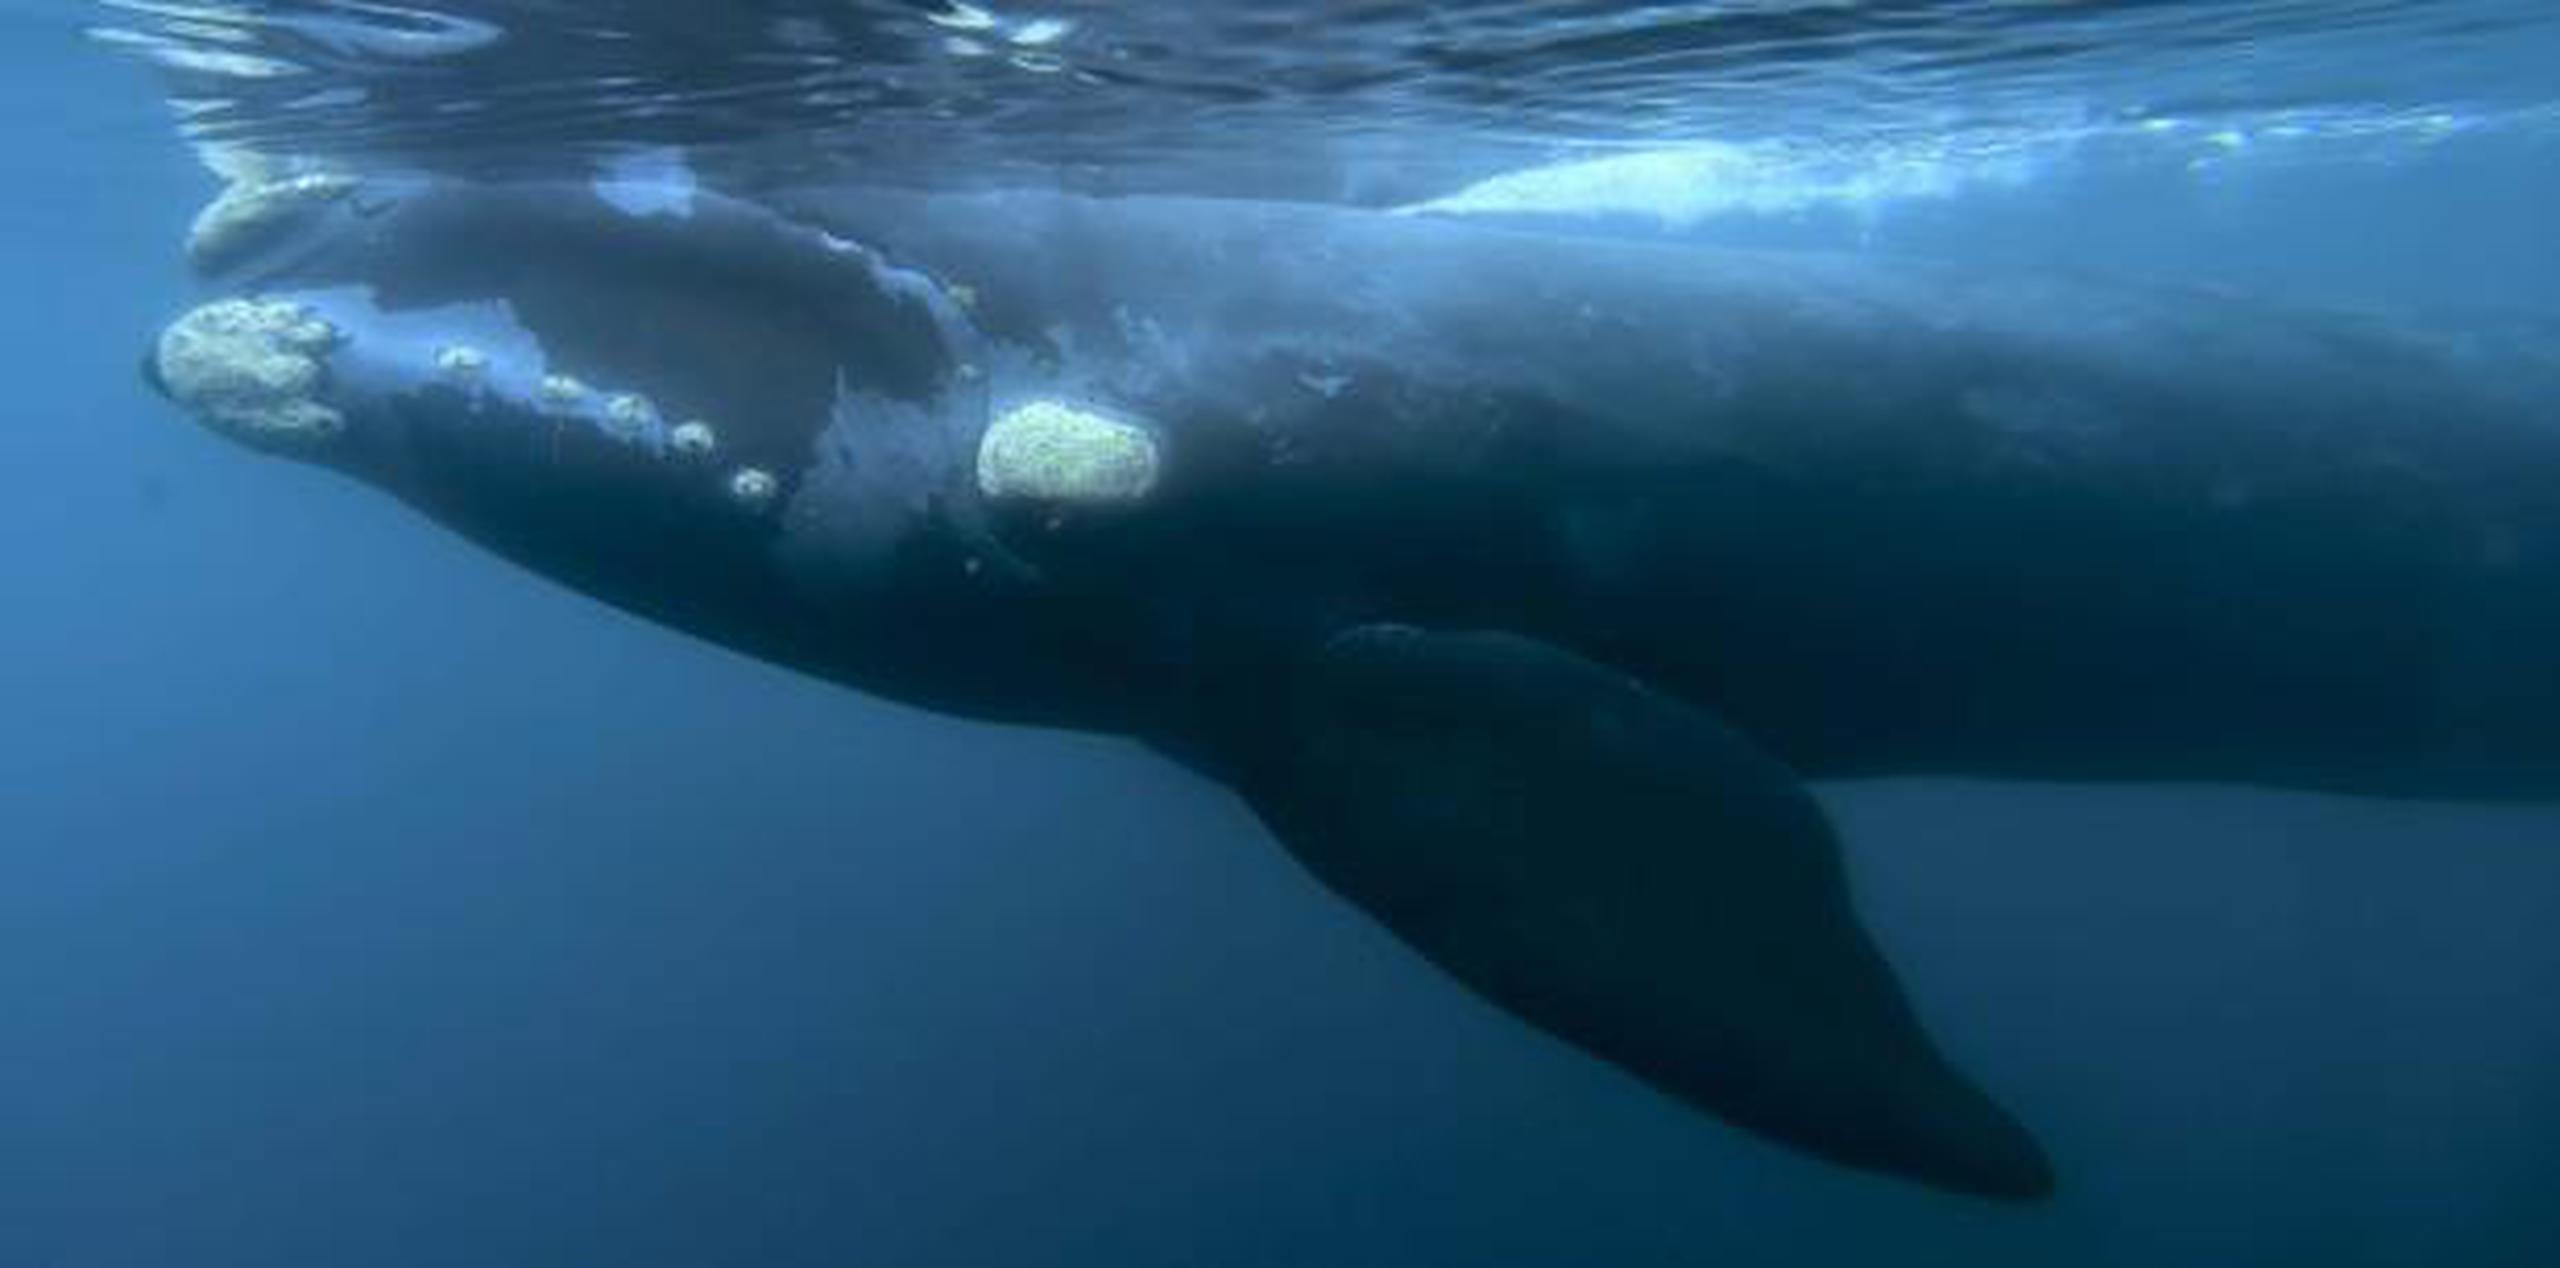 Japón propone ahora crear un panel que establezca cuotas de caza comercial de ballenas. No está claro cuándo ocurriría una votación. Japón podría retirar la propues. (AP)